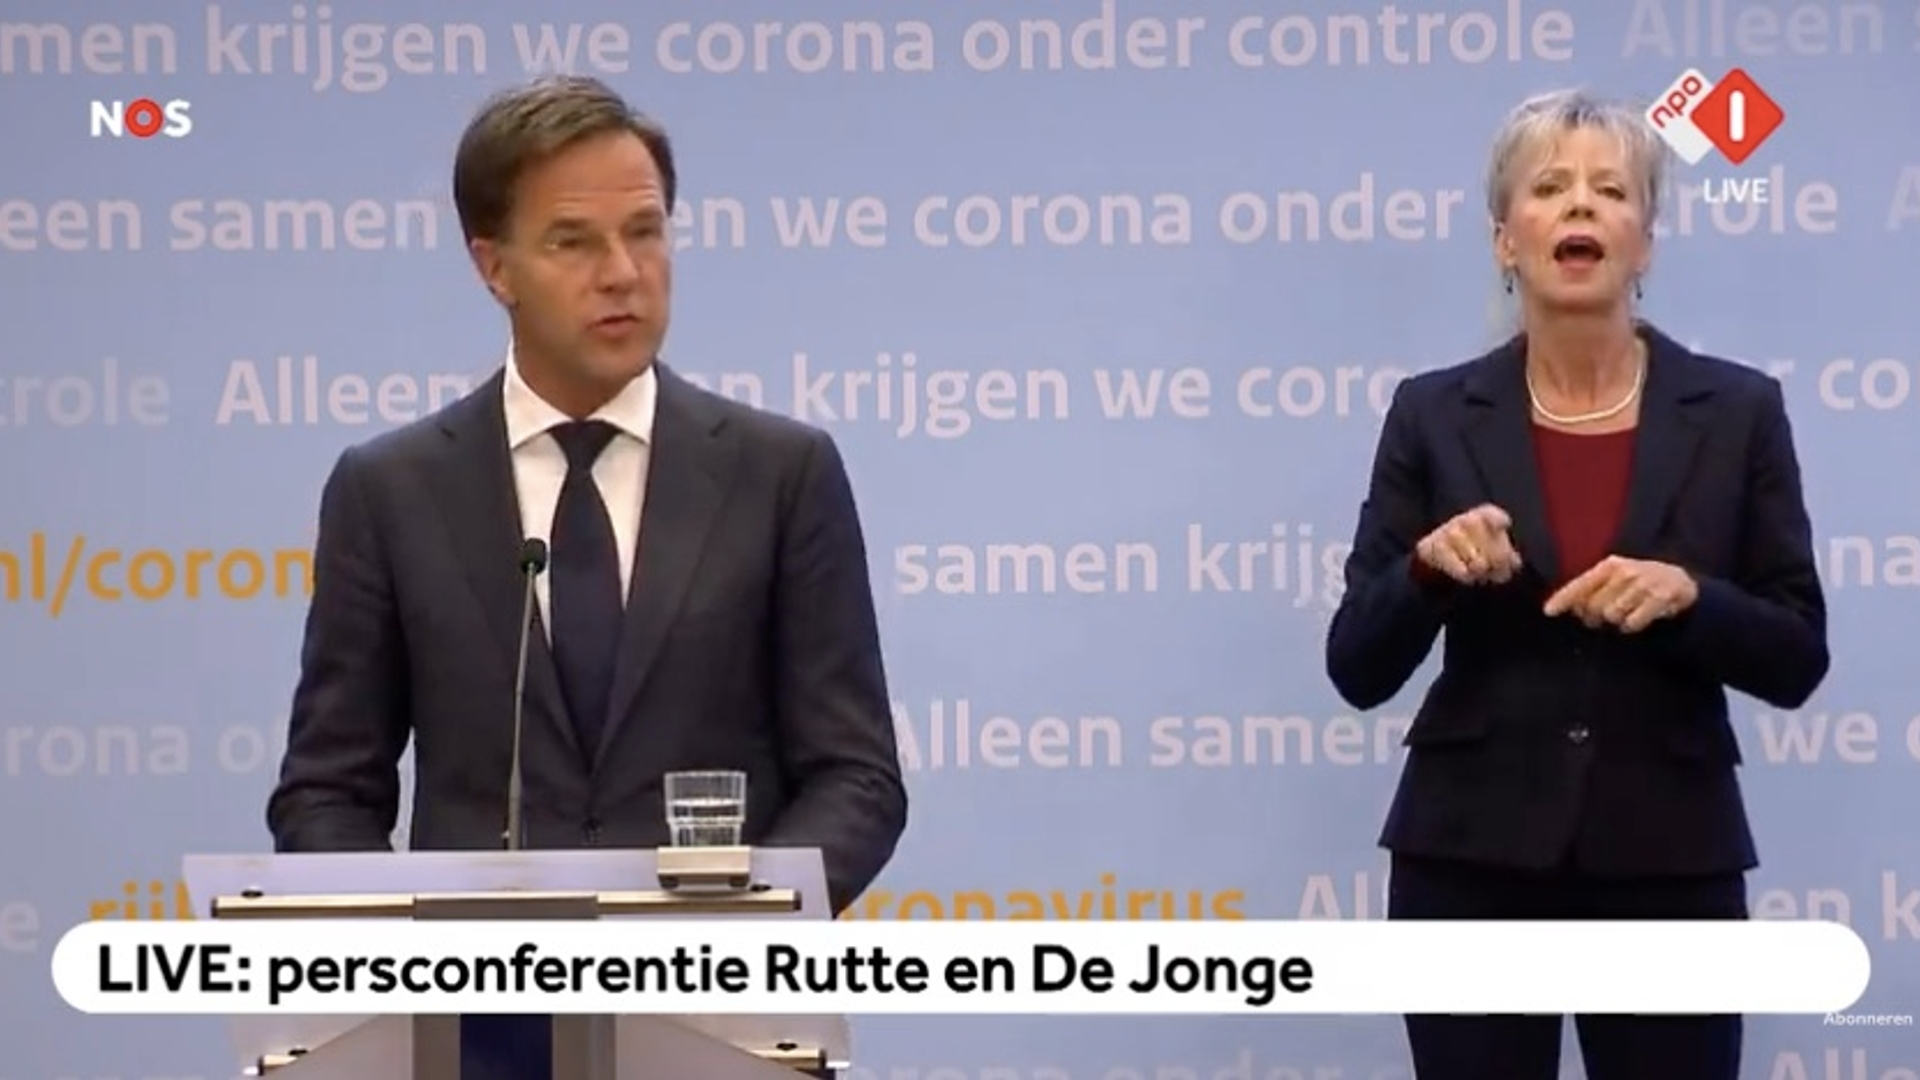 Rutte en De Jonge geven persconferentie over corona